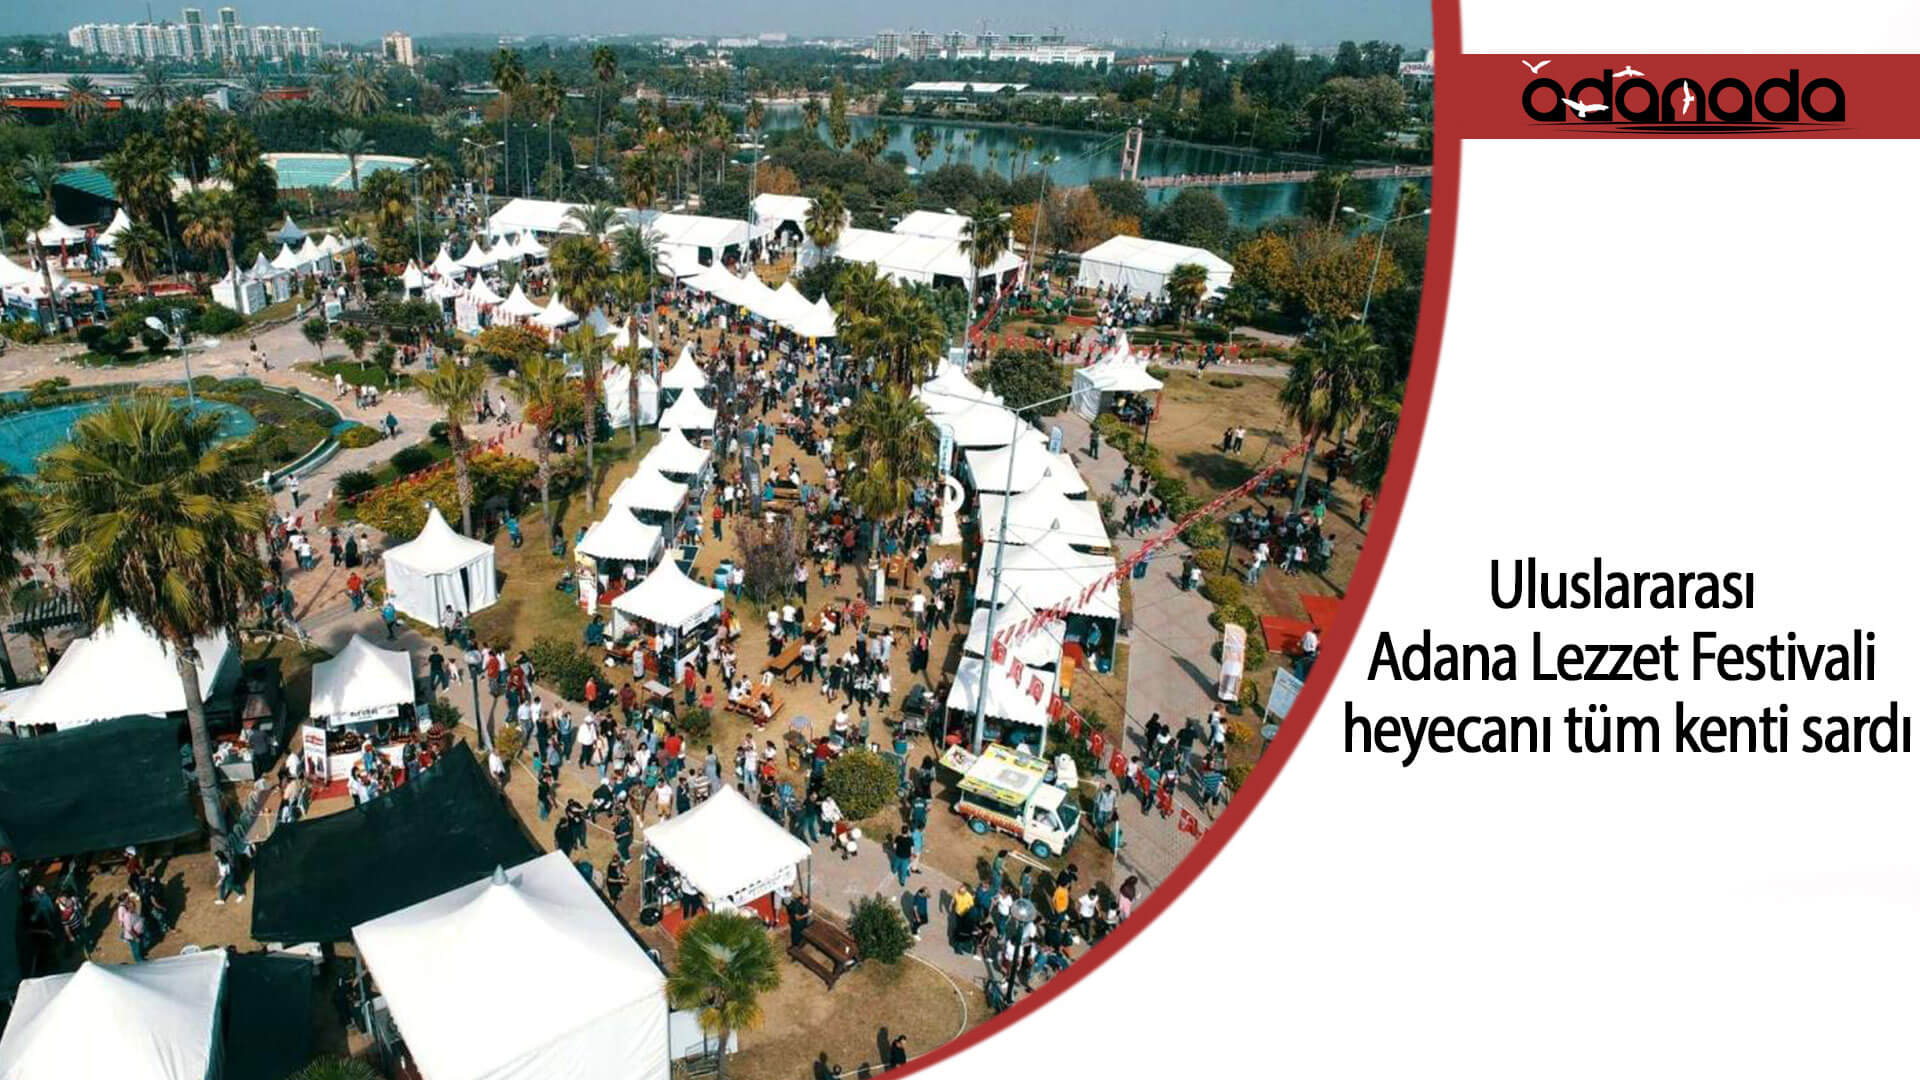 Uluslararası Adana Lezzet Festivali heyecanı tüm kenti sardı